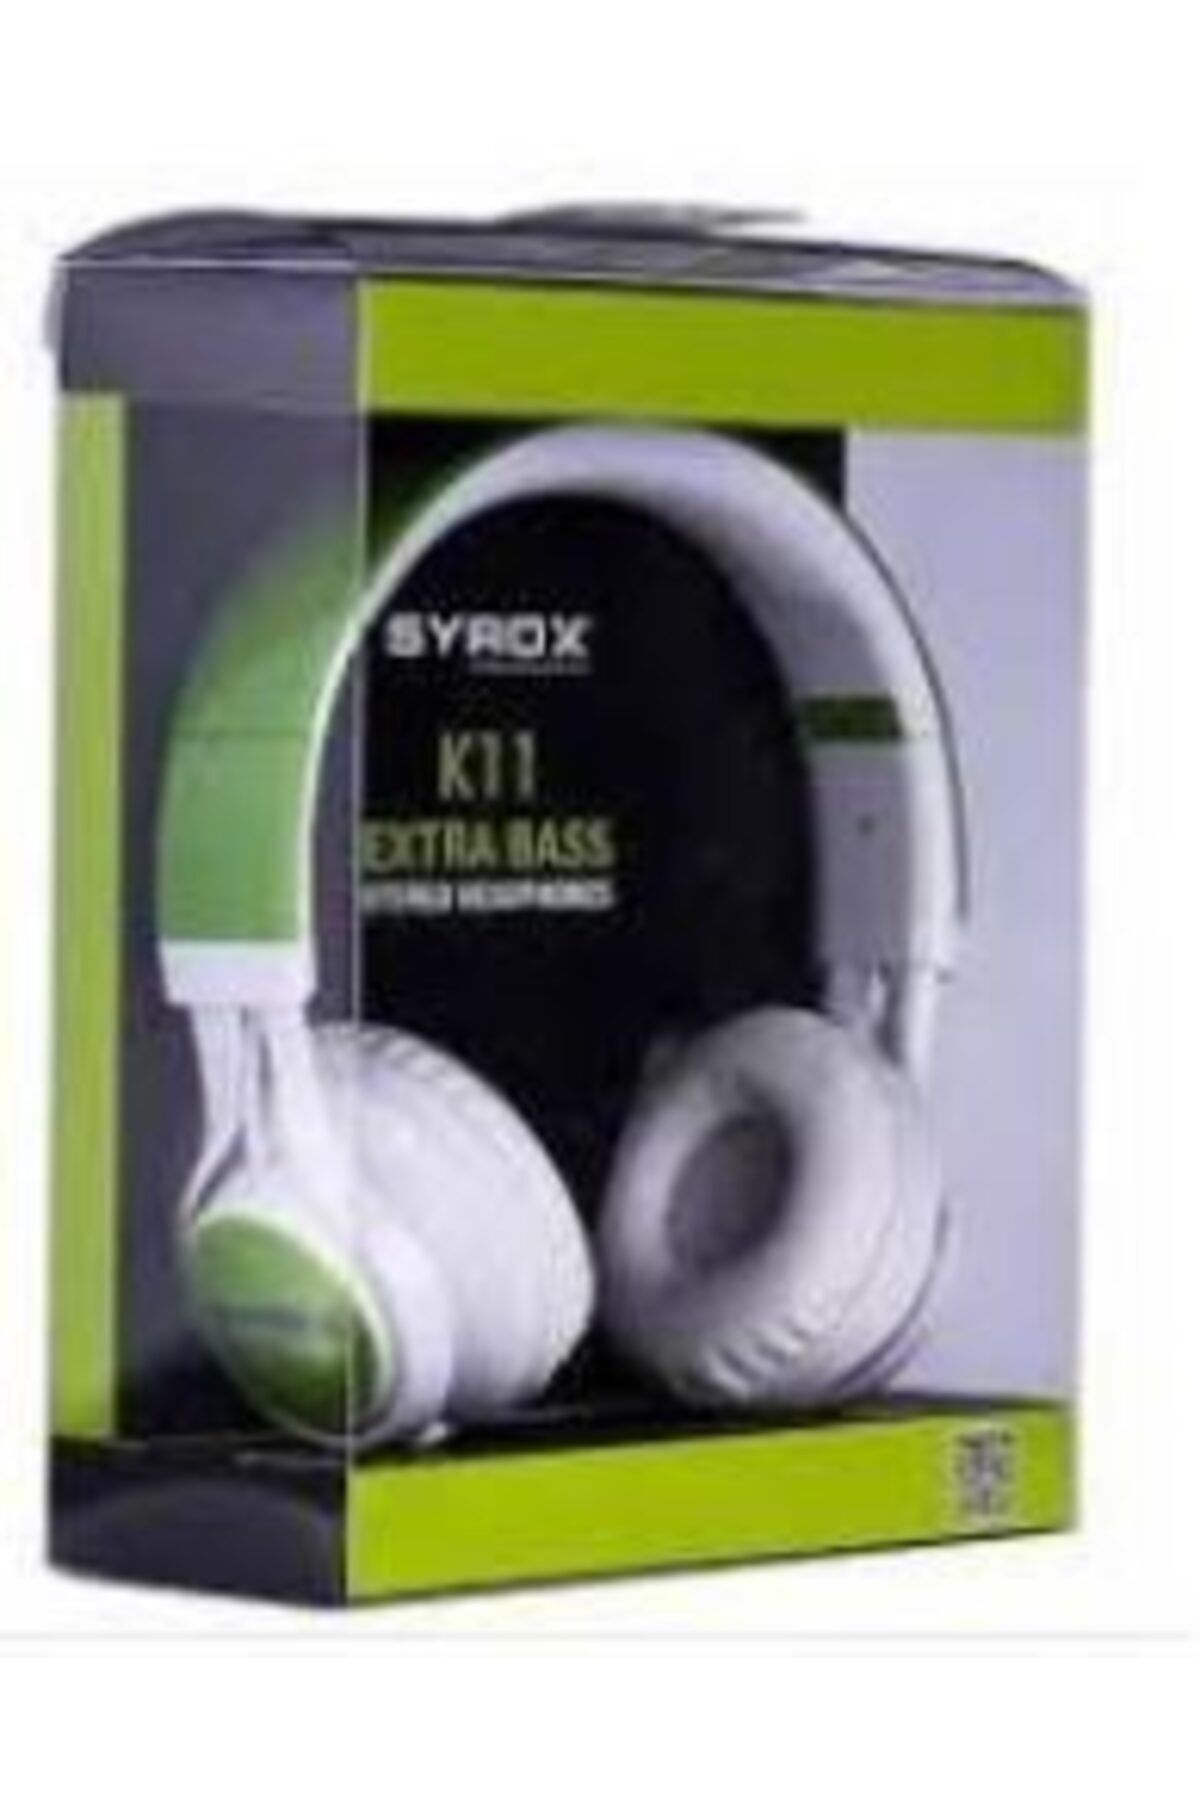 Syrox Unisex Yeşil K11 Mikrofonlu Stereo Kablolu Kulak Üstü Kulaklık